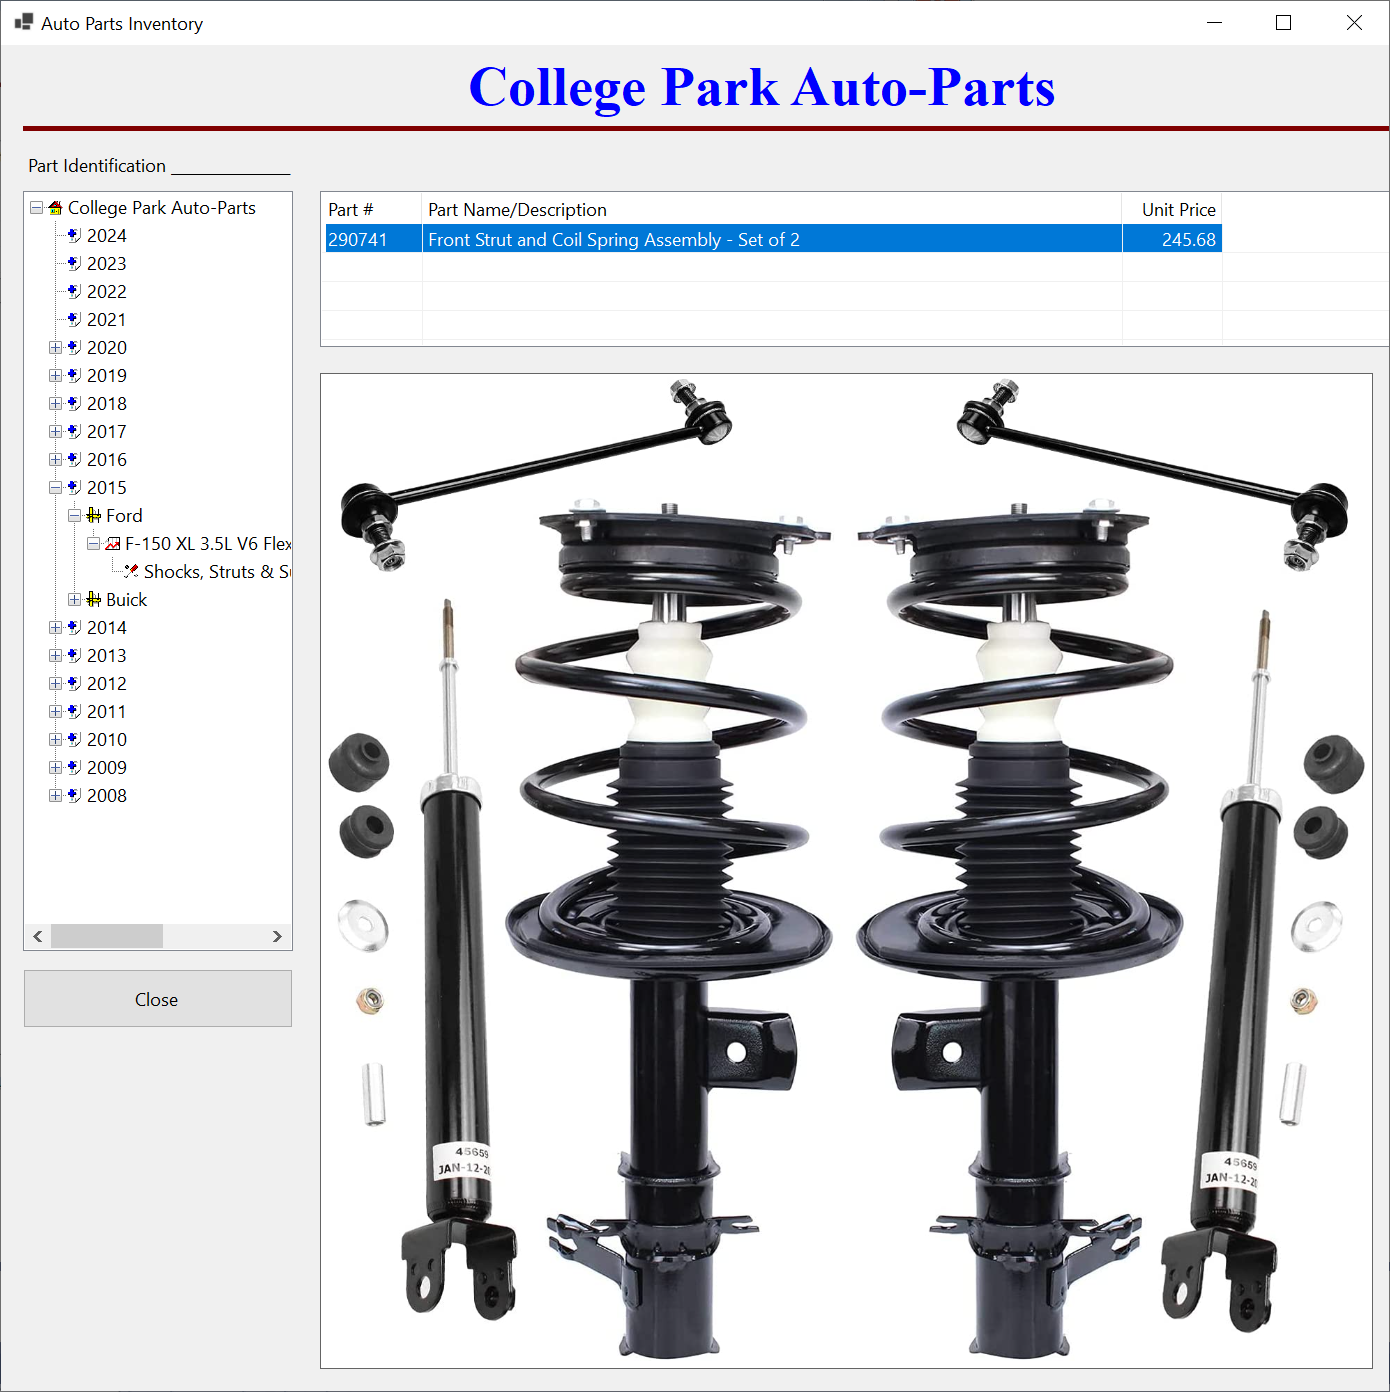 College Park Auto-Parts - Parts Inventory